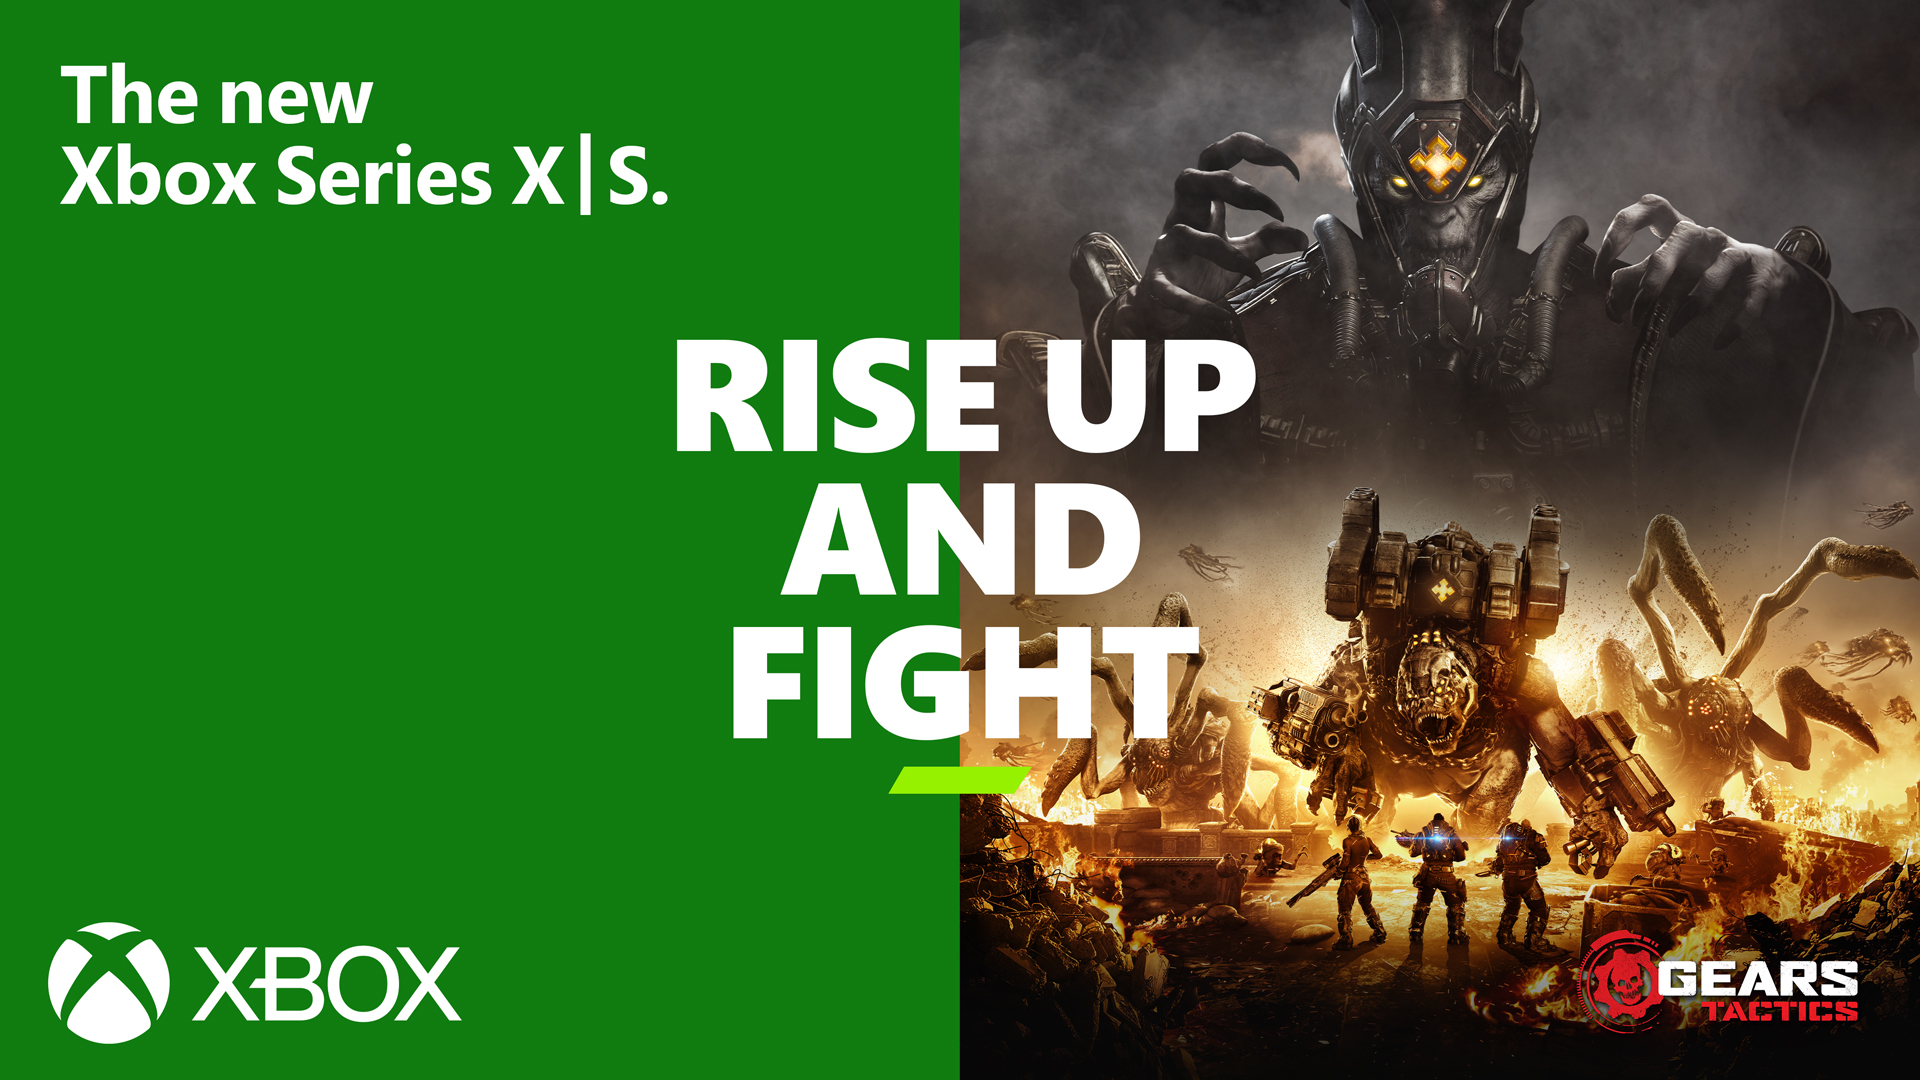 Video For Gears Tactics sera disponible dès le lancement des Xbox Series X et Series S, le 10 novembre